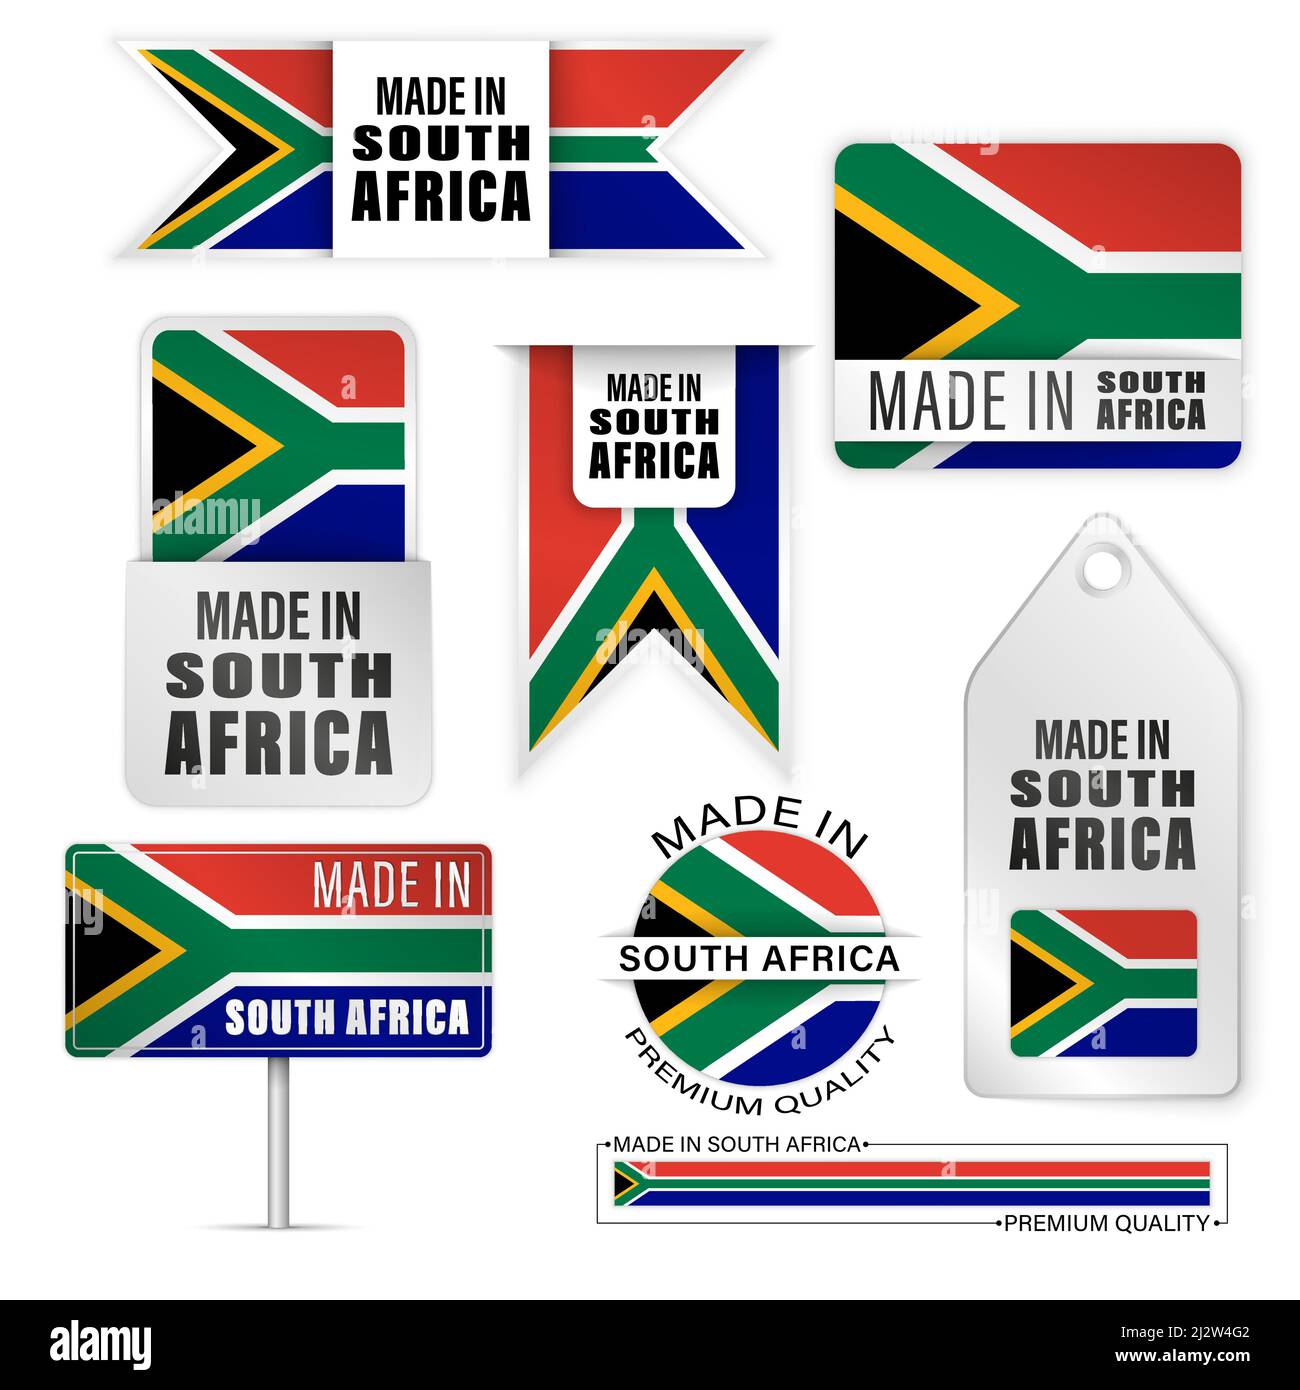 Hergestellt in Südafrika Grafiken und Etiketten Set. Einige Elemente der Auswirkung für die Verwendung, die Sie daraus machen möchten. Stock Vektor